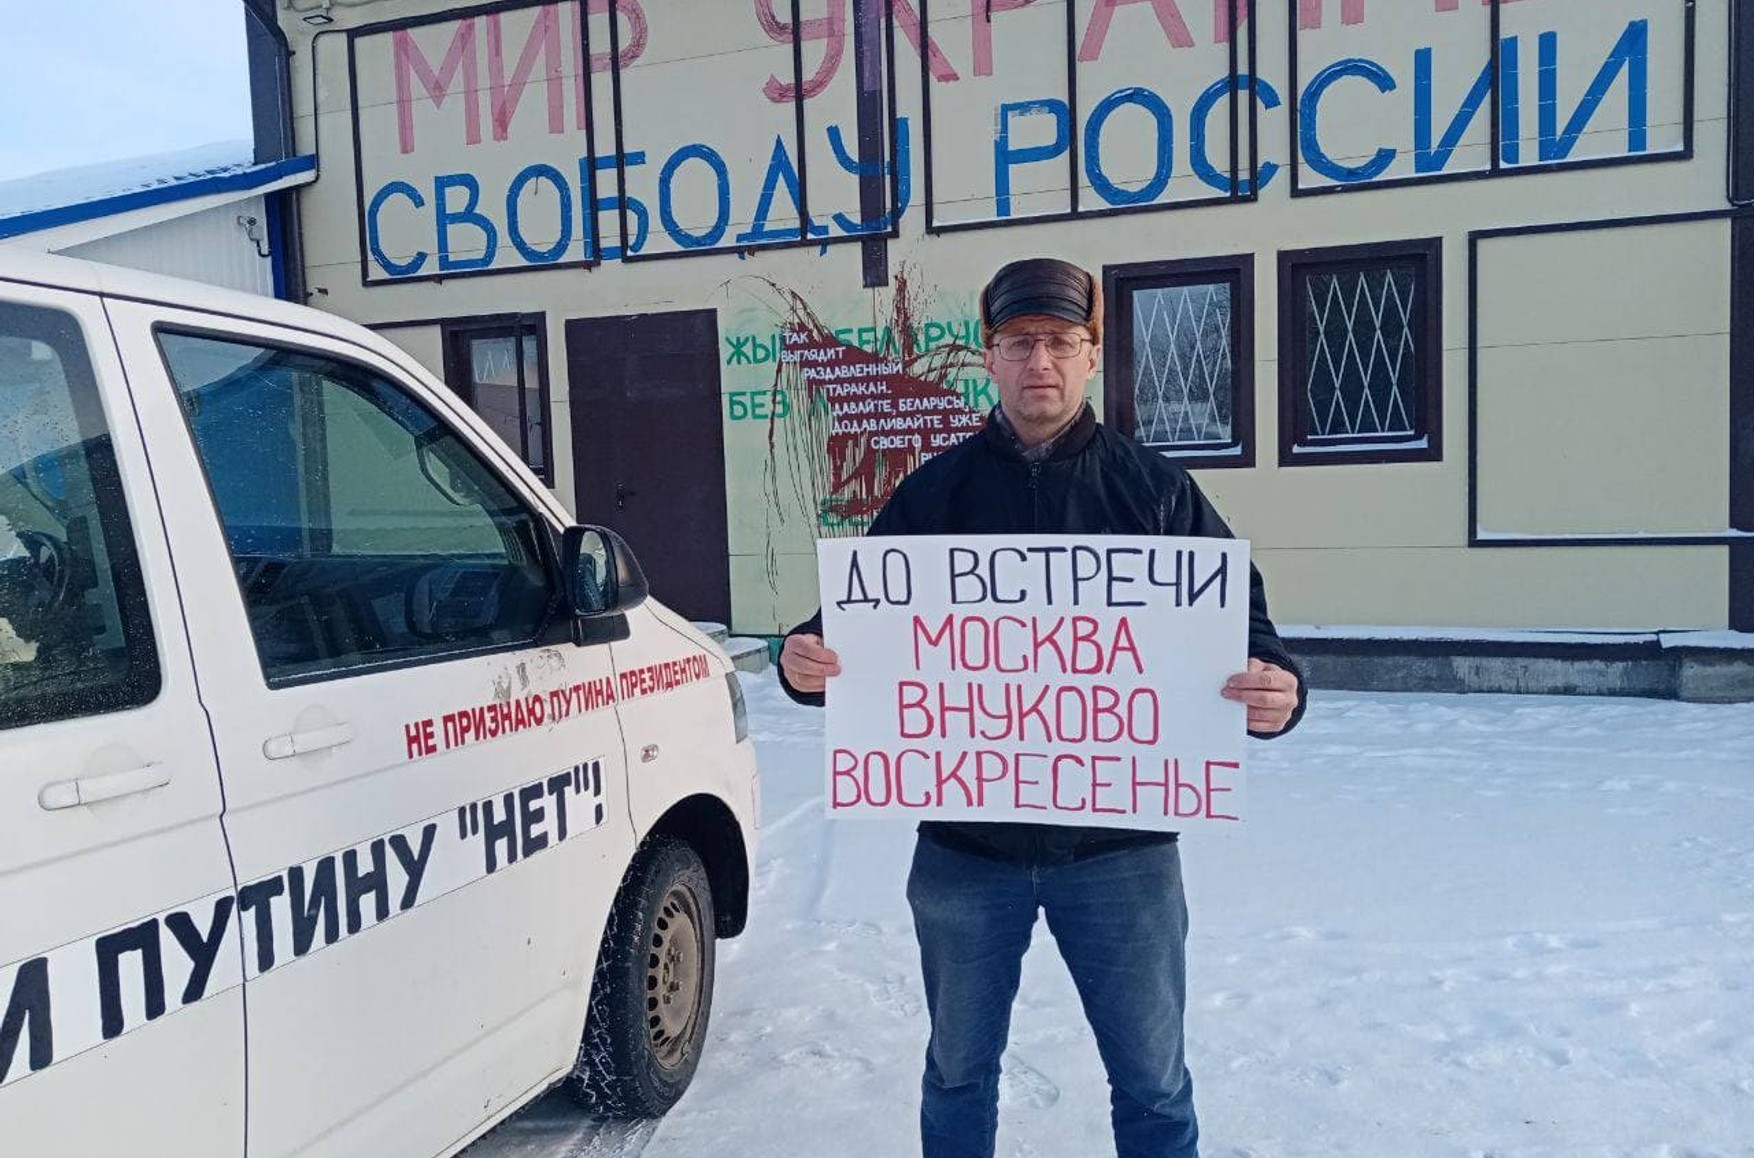 У Петербурзі затримали активістку, яка збиралася зустрічати Навального. У іншого активіста забрали автомобіль